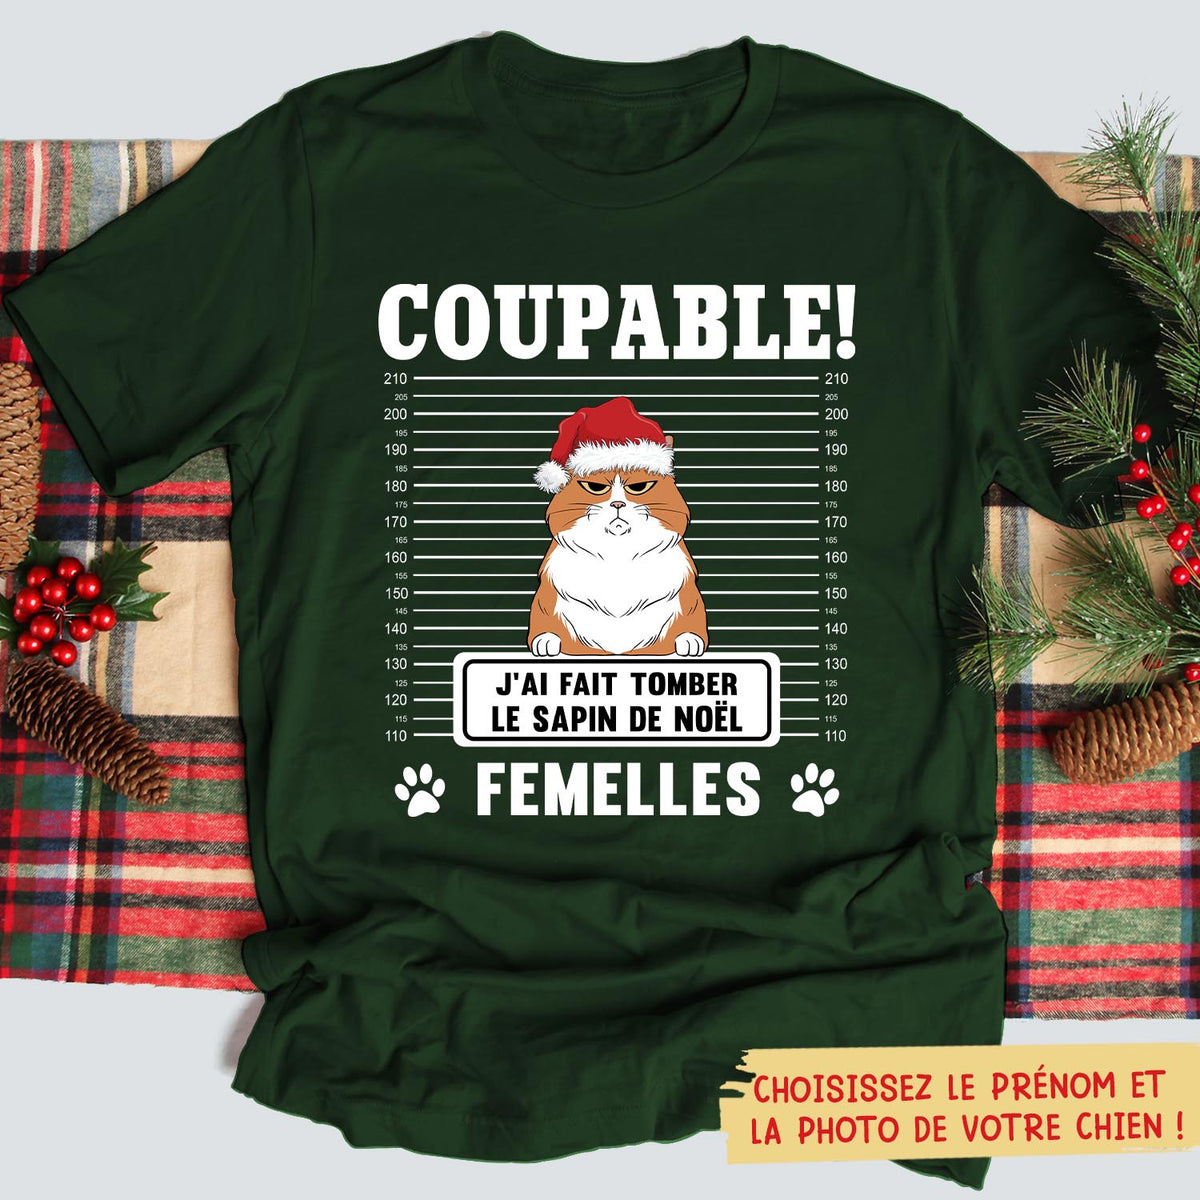 T-shirt Unisex Personnalisé - Coupable, J‘Ai Fait Tomber Le Sapin De Noël